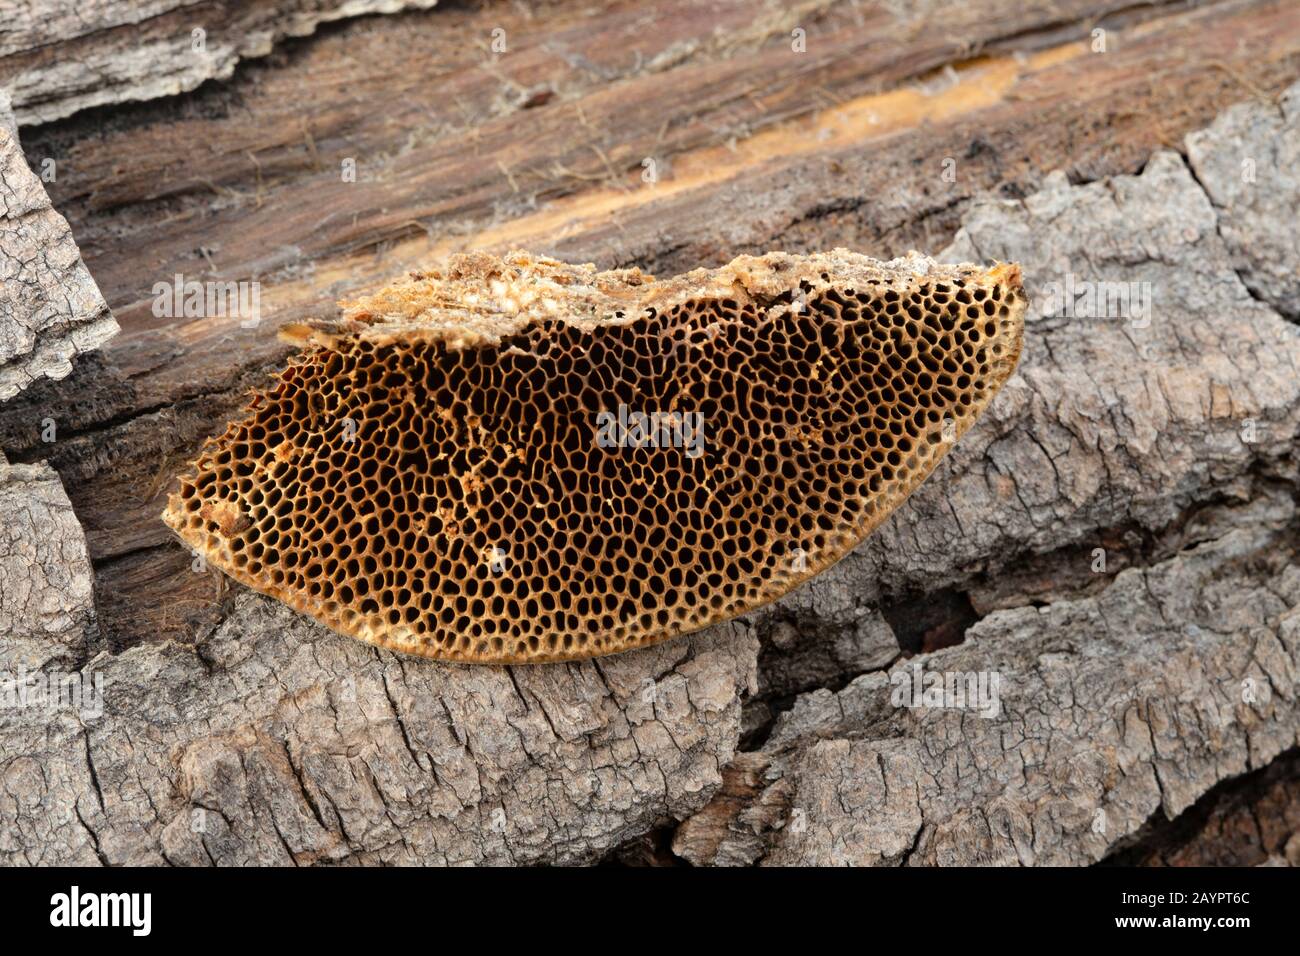 Tramete de TROG. Les pores de type nid d'abeilles de Trametes trogii, qui grandissaient sur le tronc d'un arbre noir mort en bois de coton. Banque D'Images